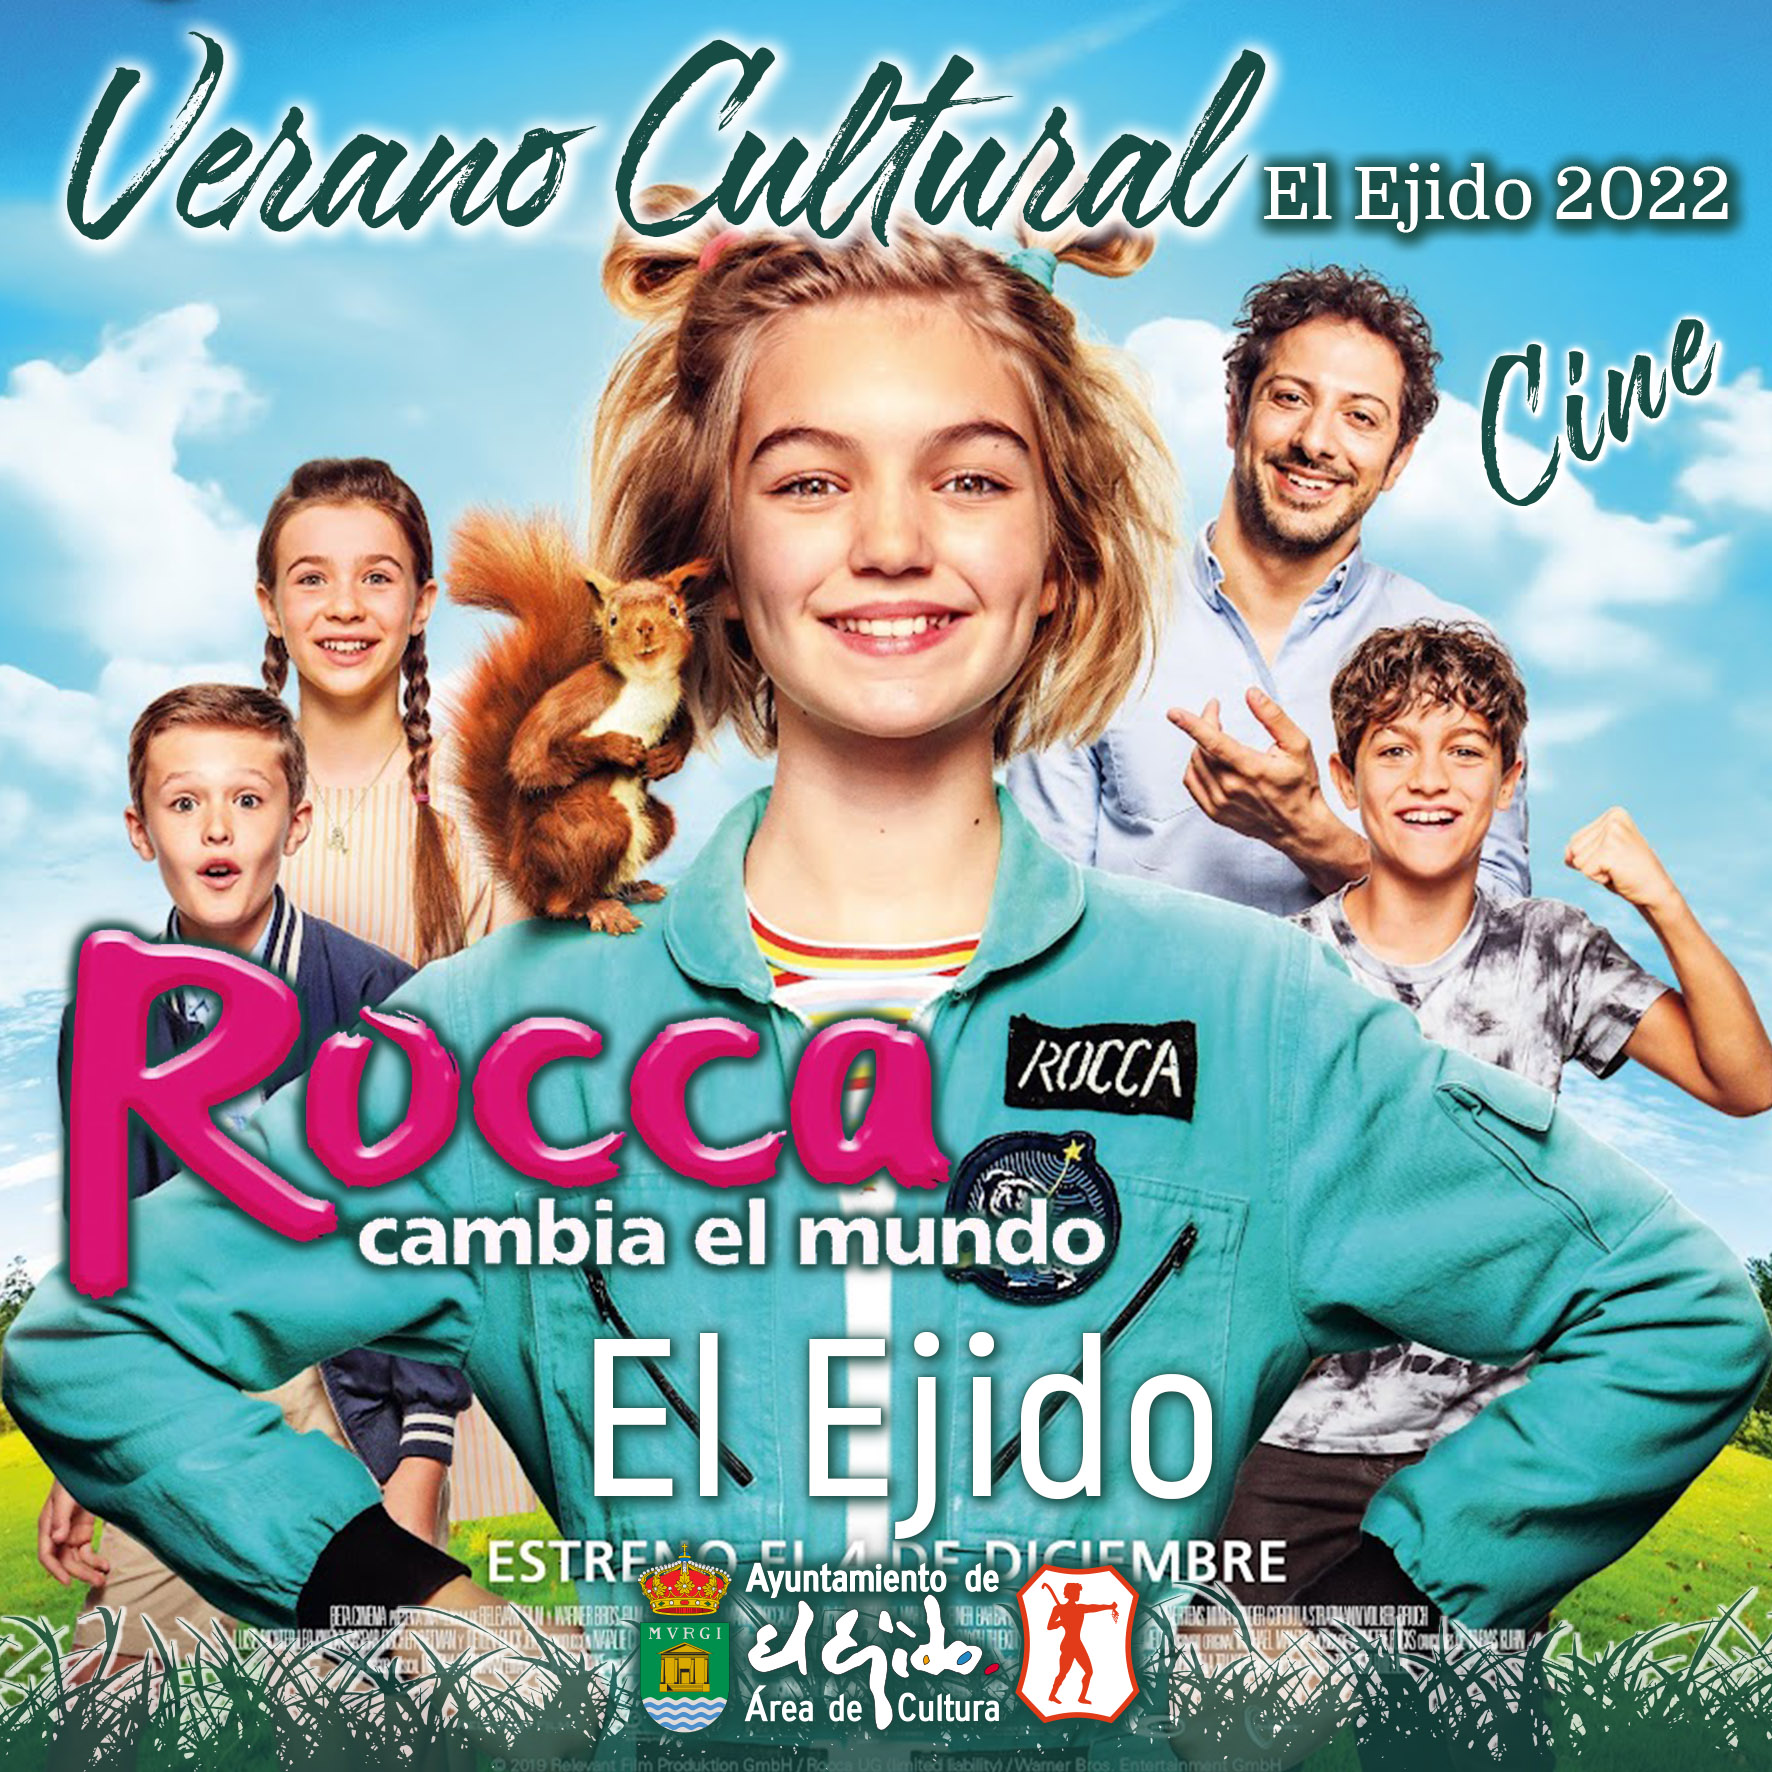 Verano Cultural 2022 de El Ejido – Cine – El Ejido – Rocca cambia el mundo